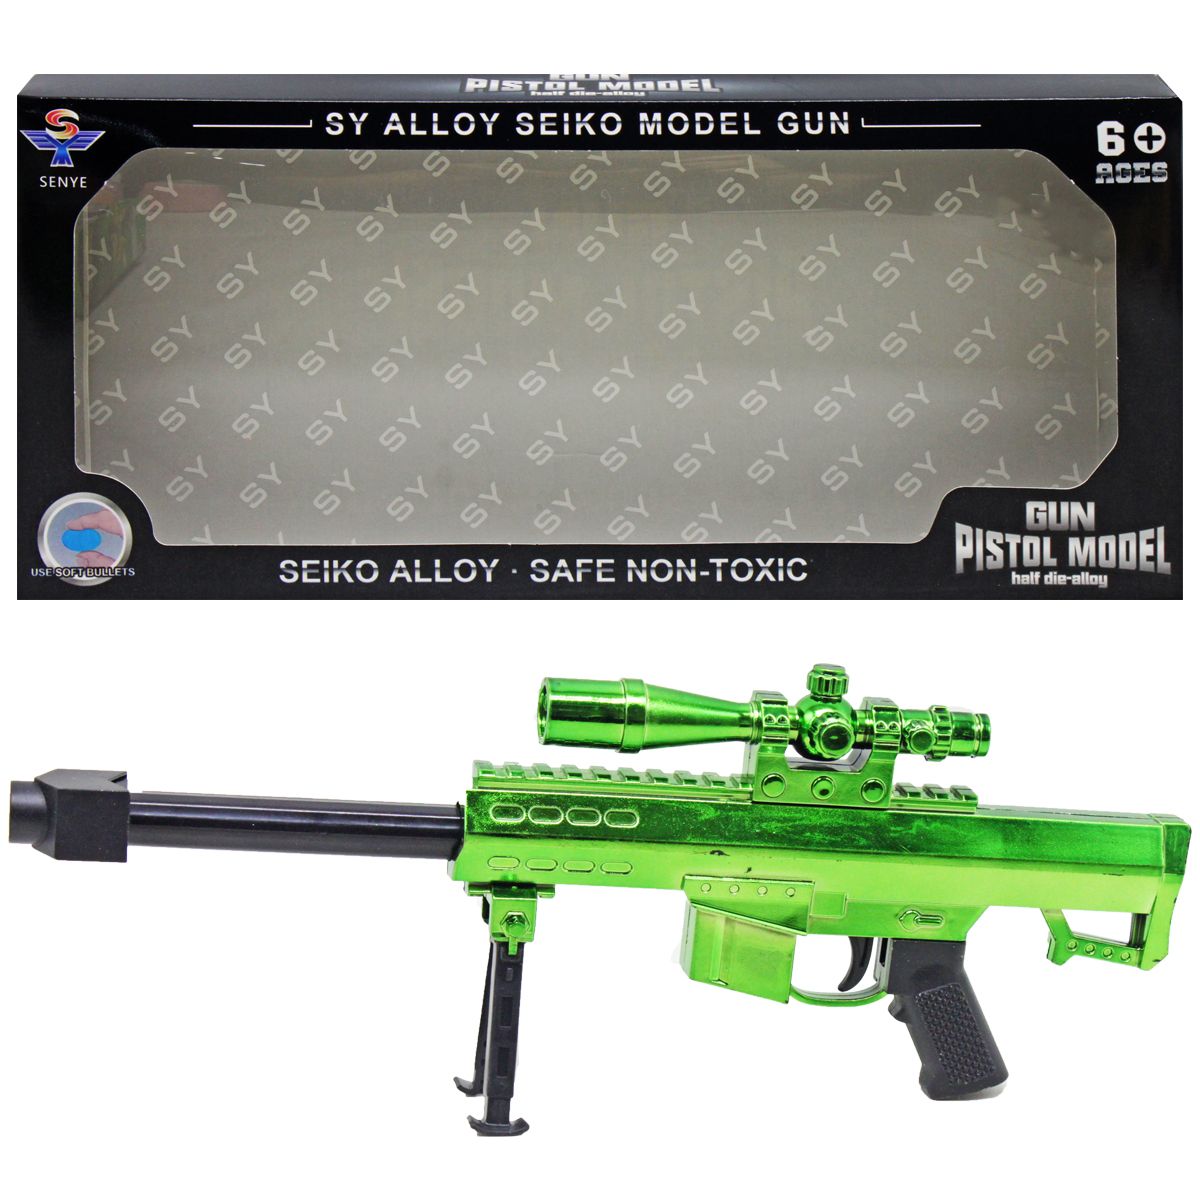 Автомат "Gun pistol model" (зеленый)